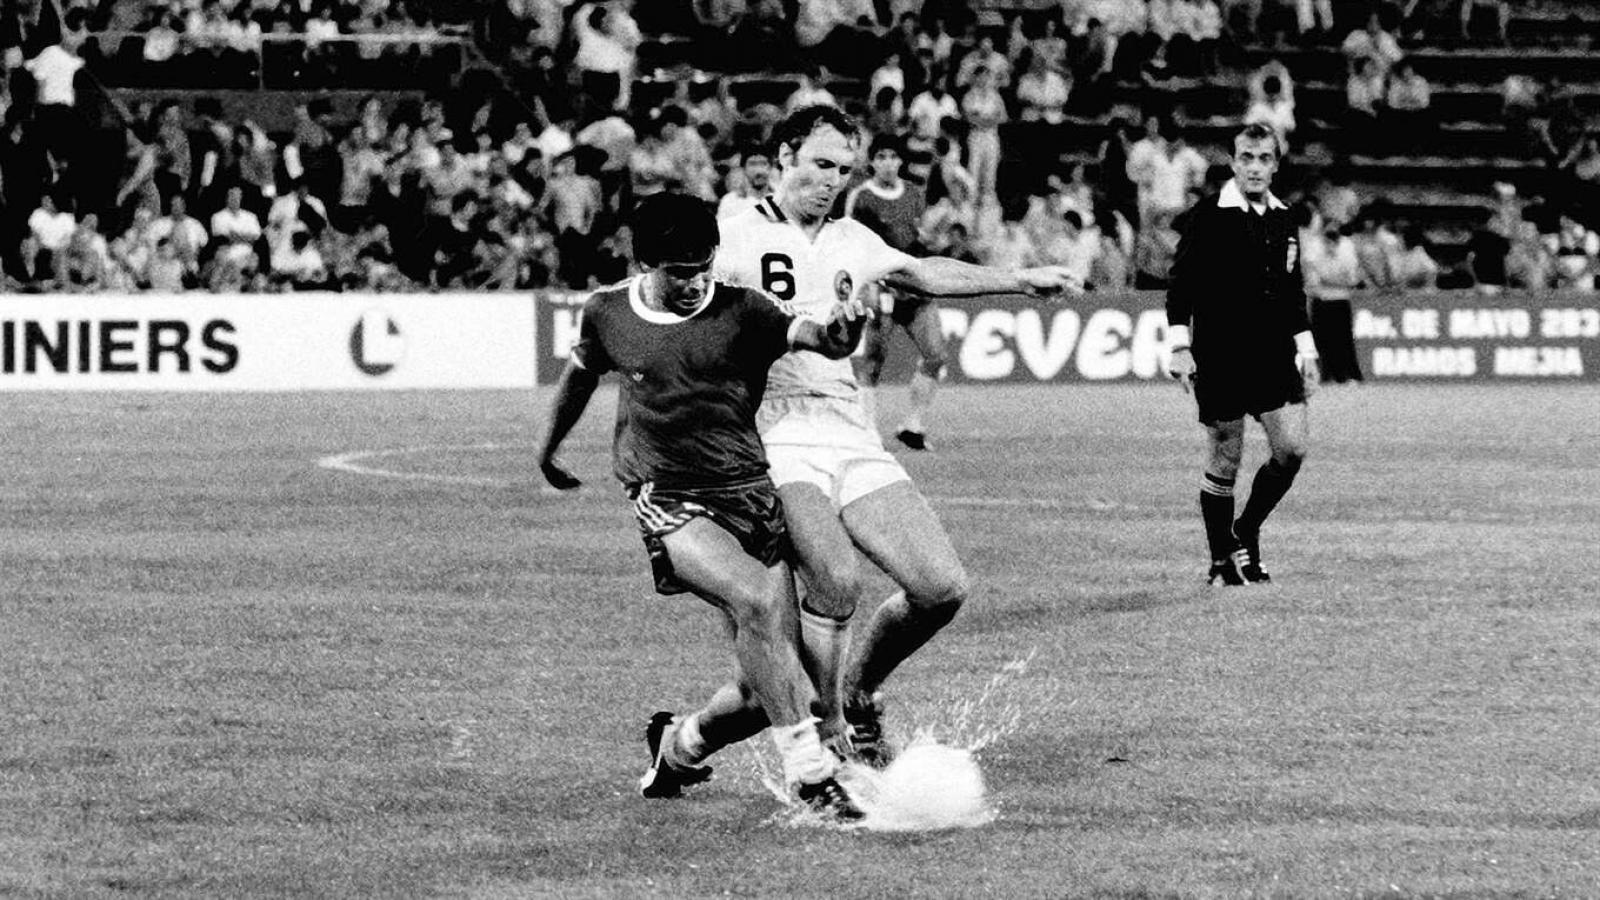 Imagen 1980. Maradona y Beckenbauer en un Argentinos - Cosmos disputado en Vélez